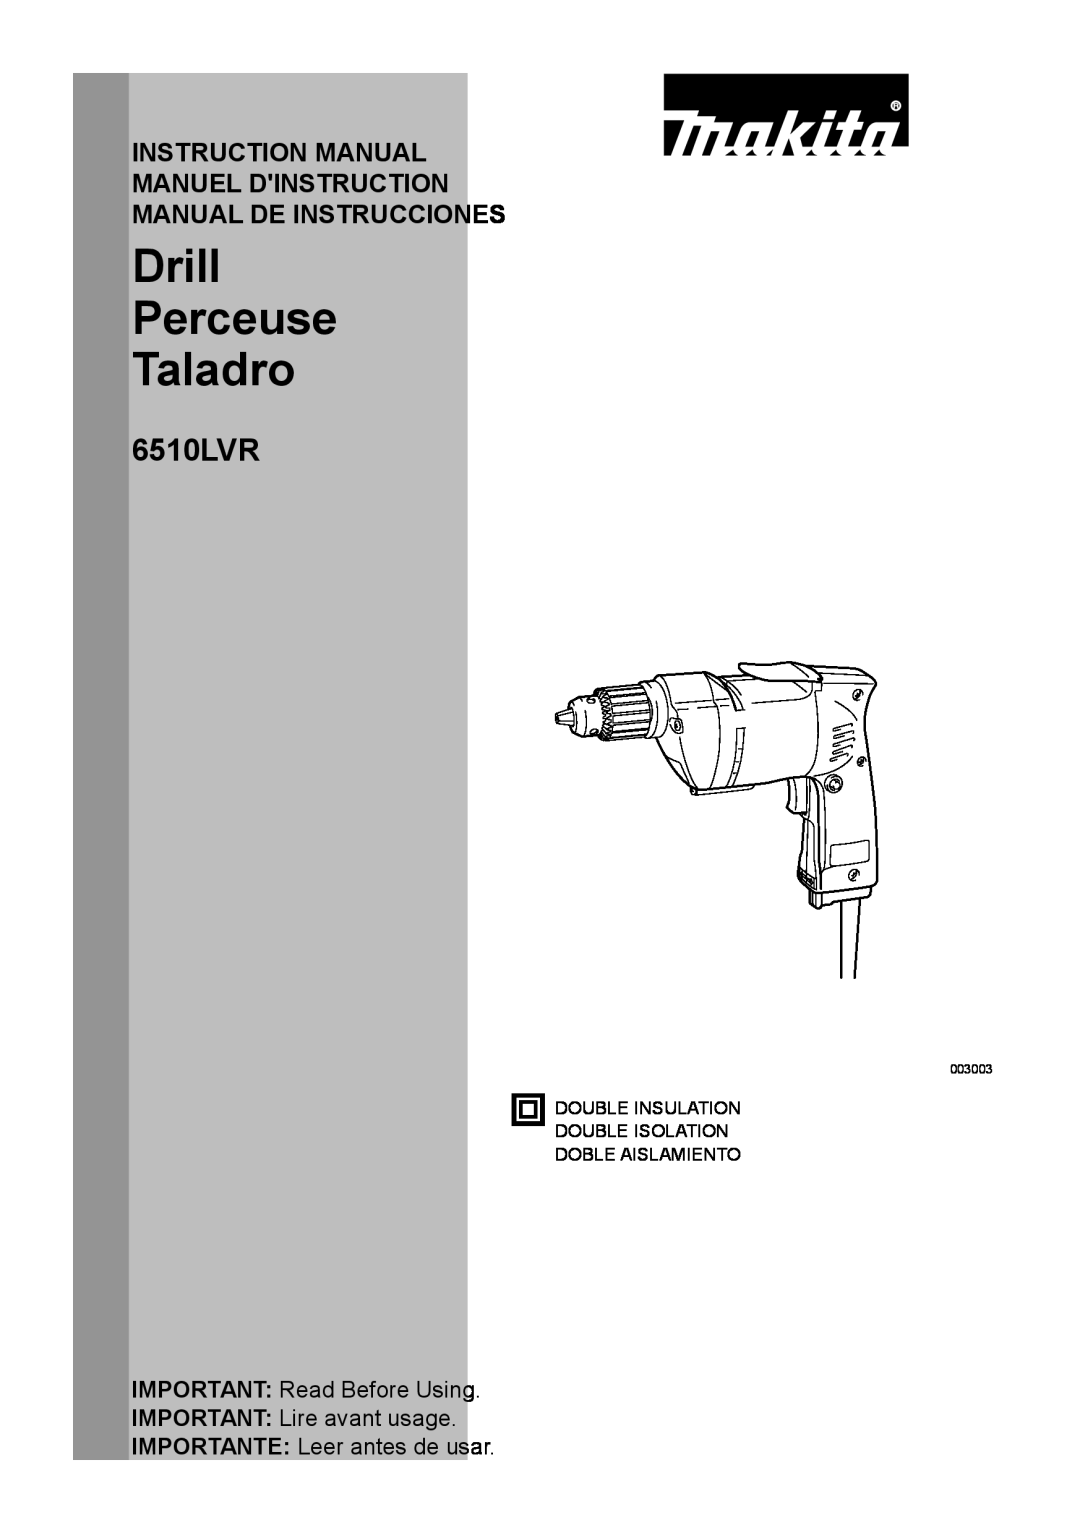 Makita 6510LVR instruction manual Drill Perceuse Taladro, Instruction Manual Manuel Dinstruction Manual De Instrucciones 